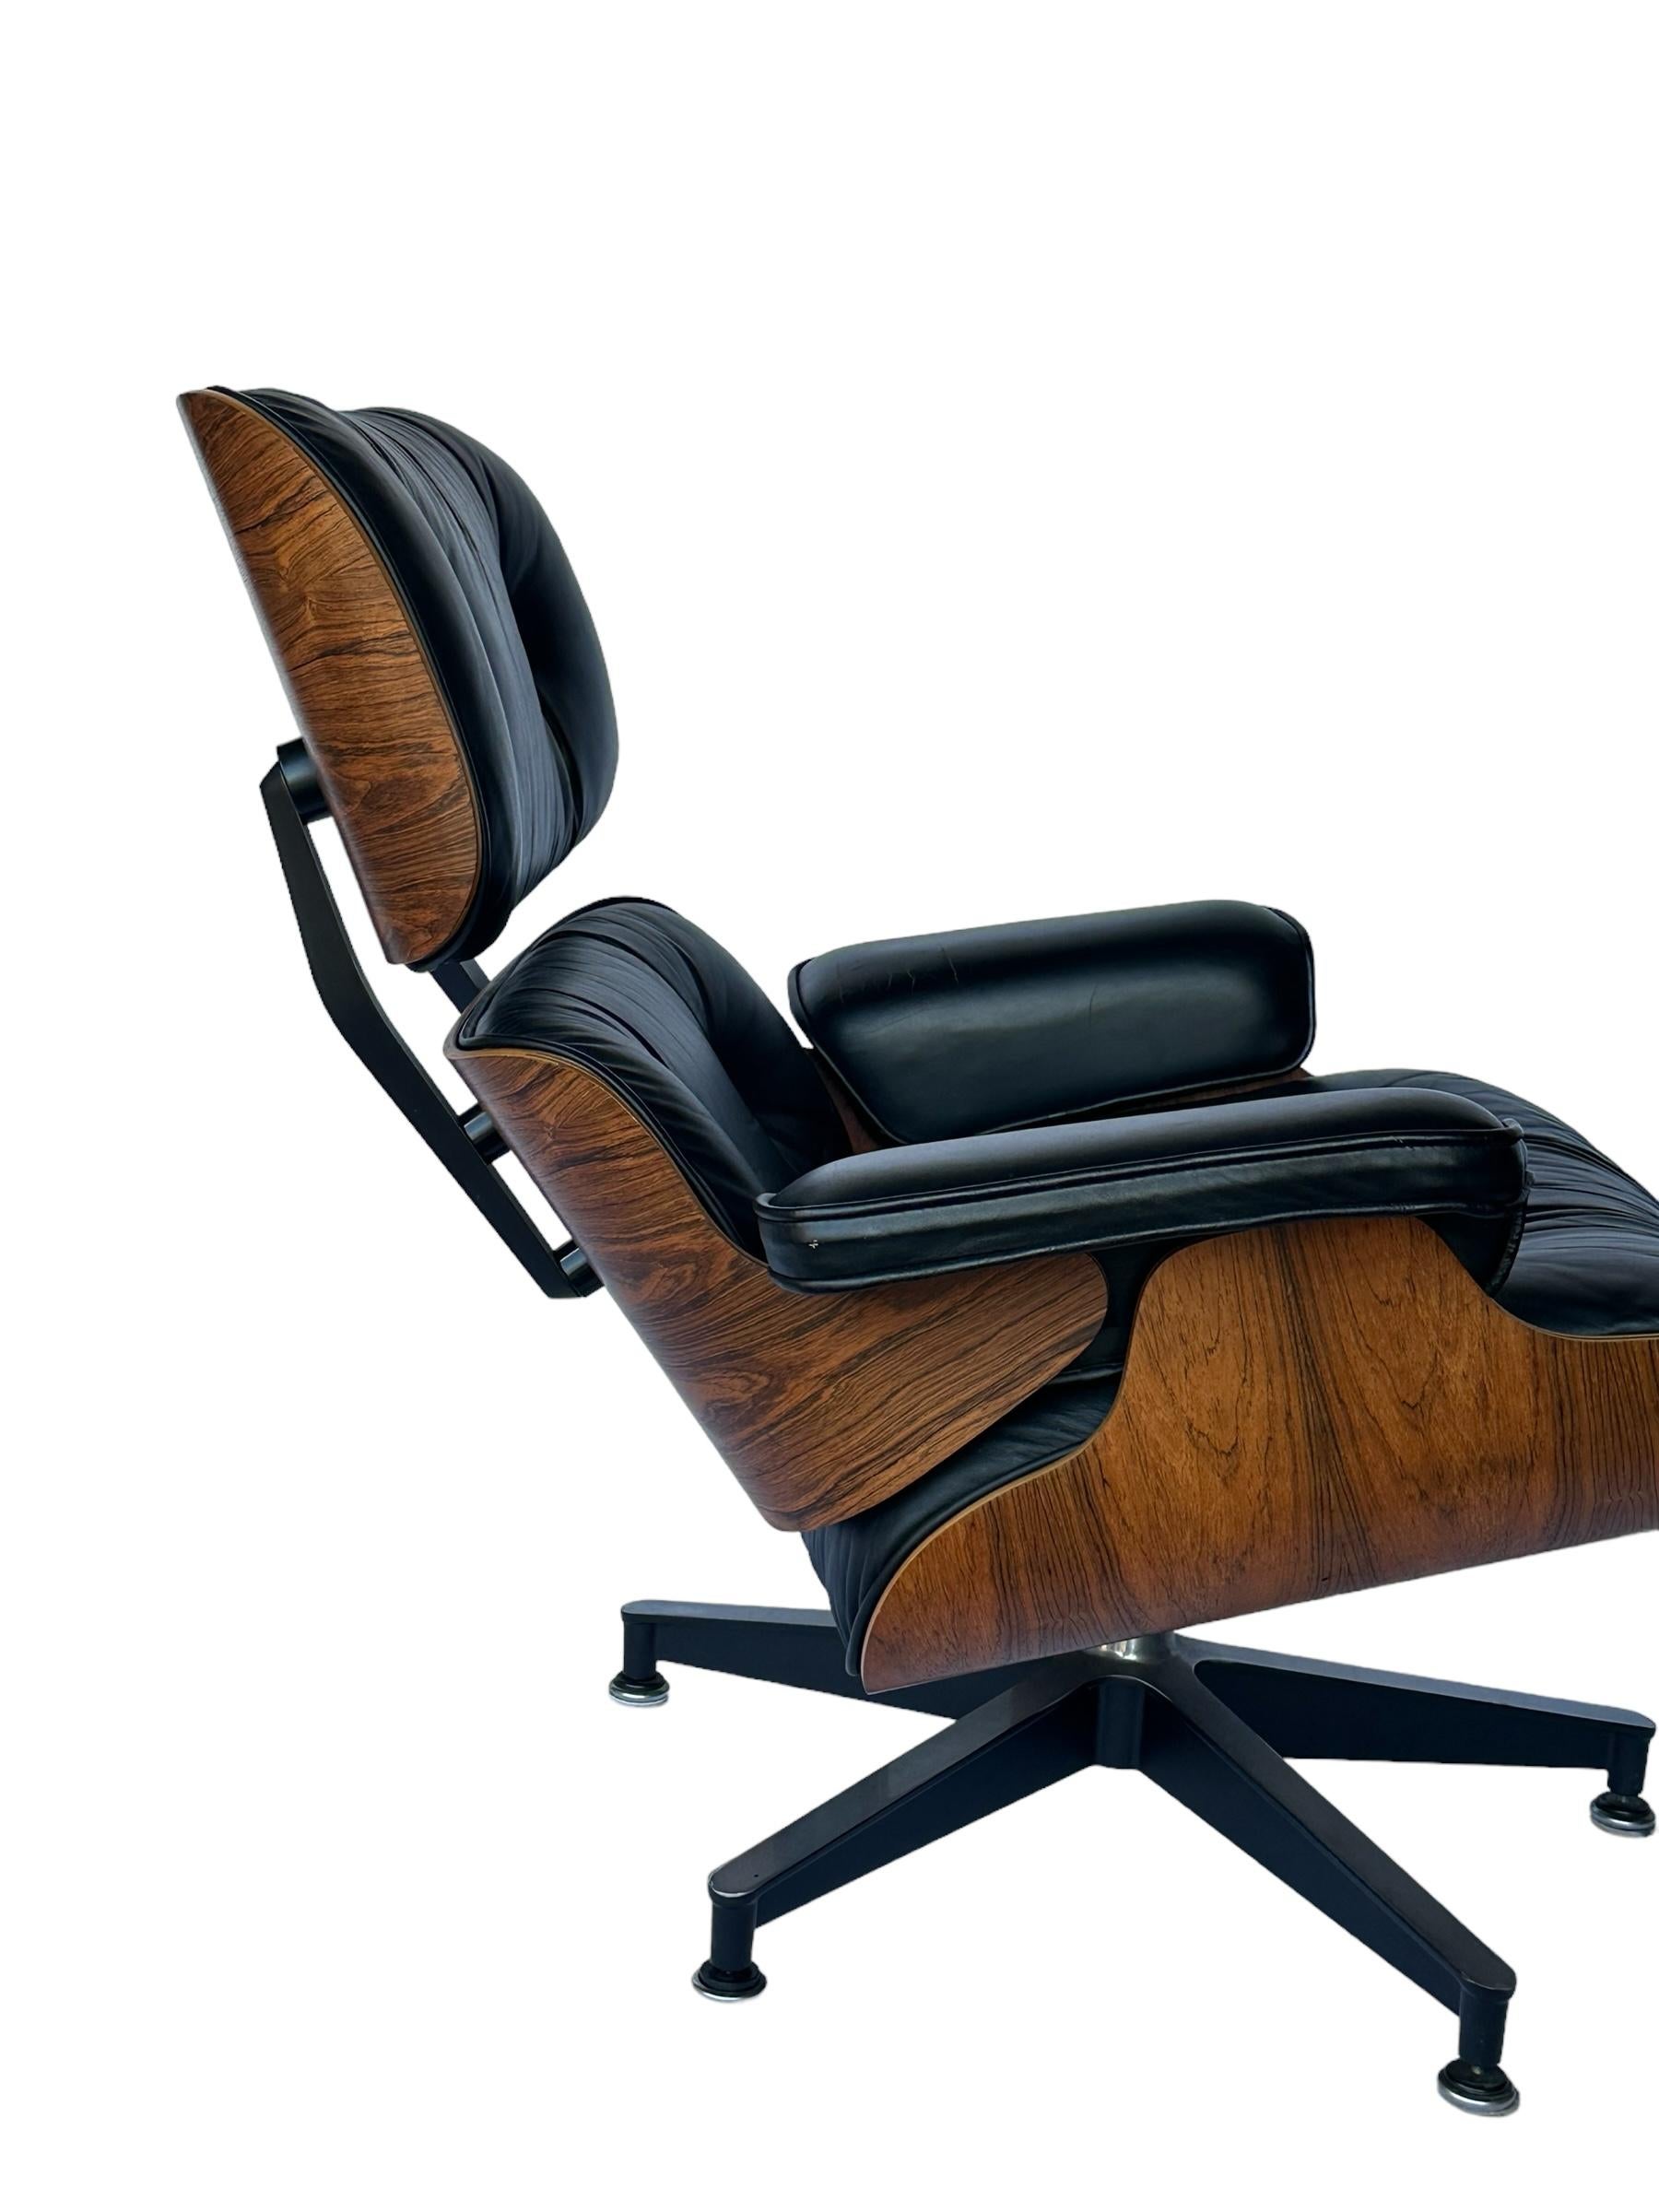 Magnifique chaise longue et ottoman Eames, édition Herman Miller, restaurés. Exécuté en palissandre brésilien avec cuir noir et bases et supports en aluminium moulé. Signé et garanti authentique. Le motif et la couleur du grain de bois sont